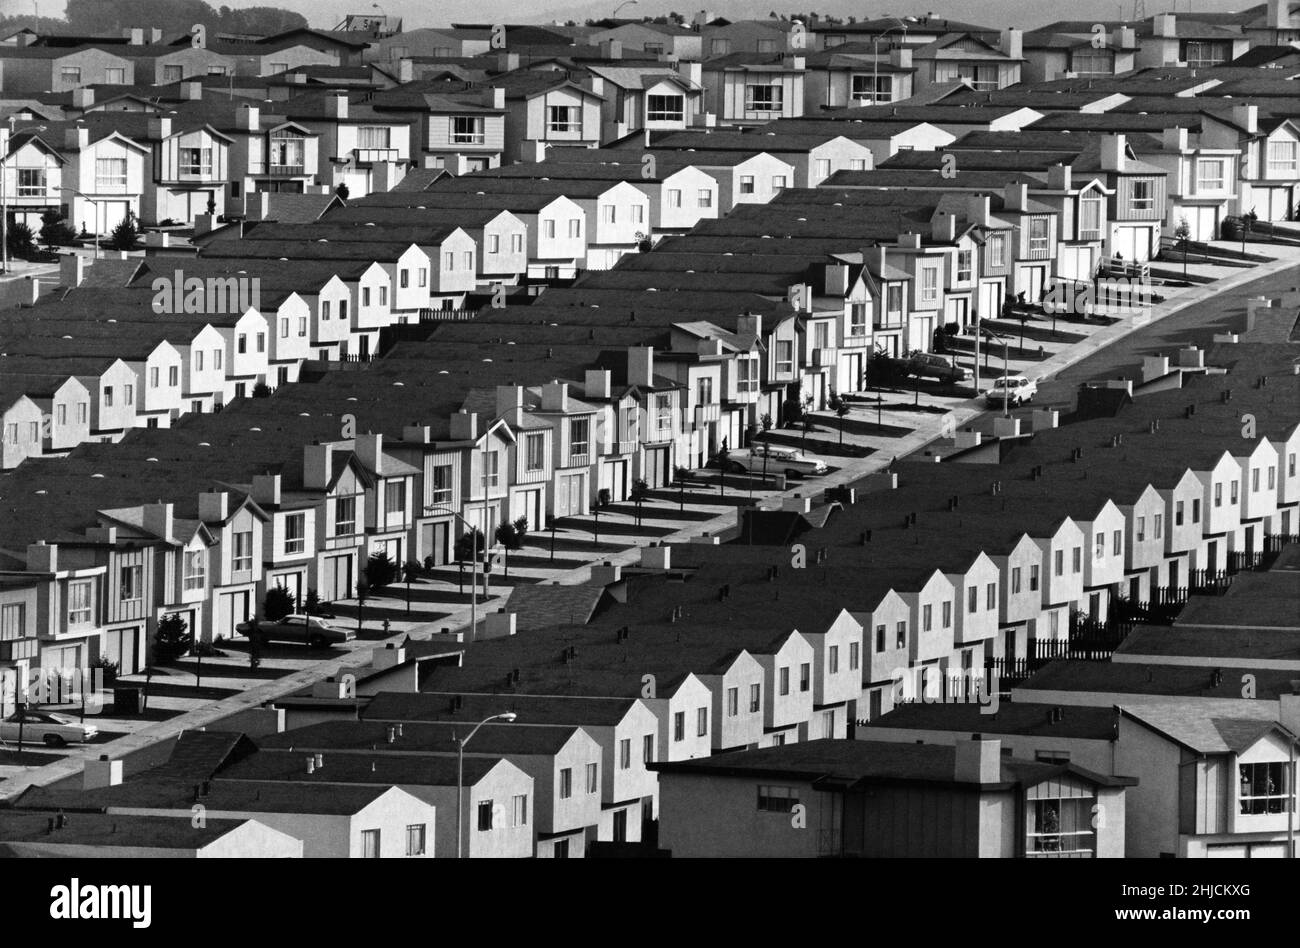 Développement de logements à Daly City, une banlieue de San Francisco, CA fondée en 1911 par John Daly un homme d'affaires de Boston.Photo vers 1980. Banque D'Images